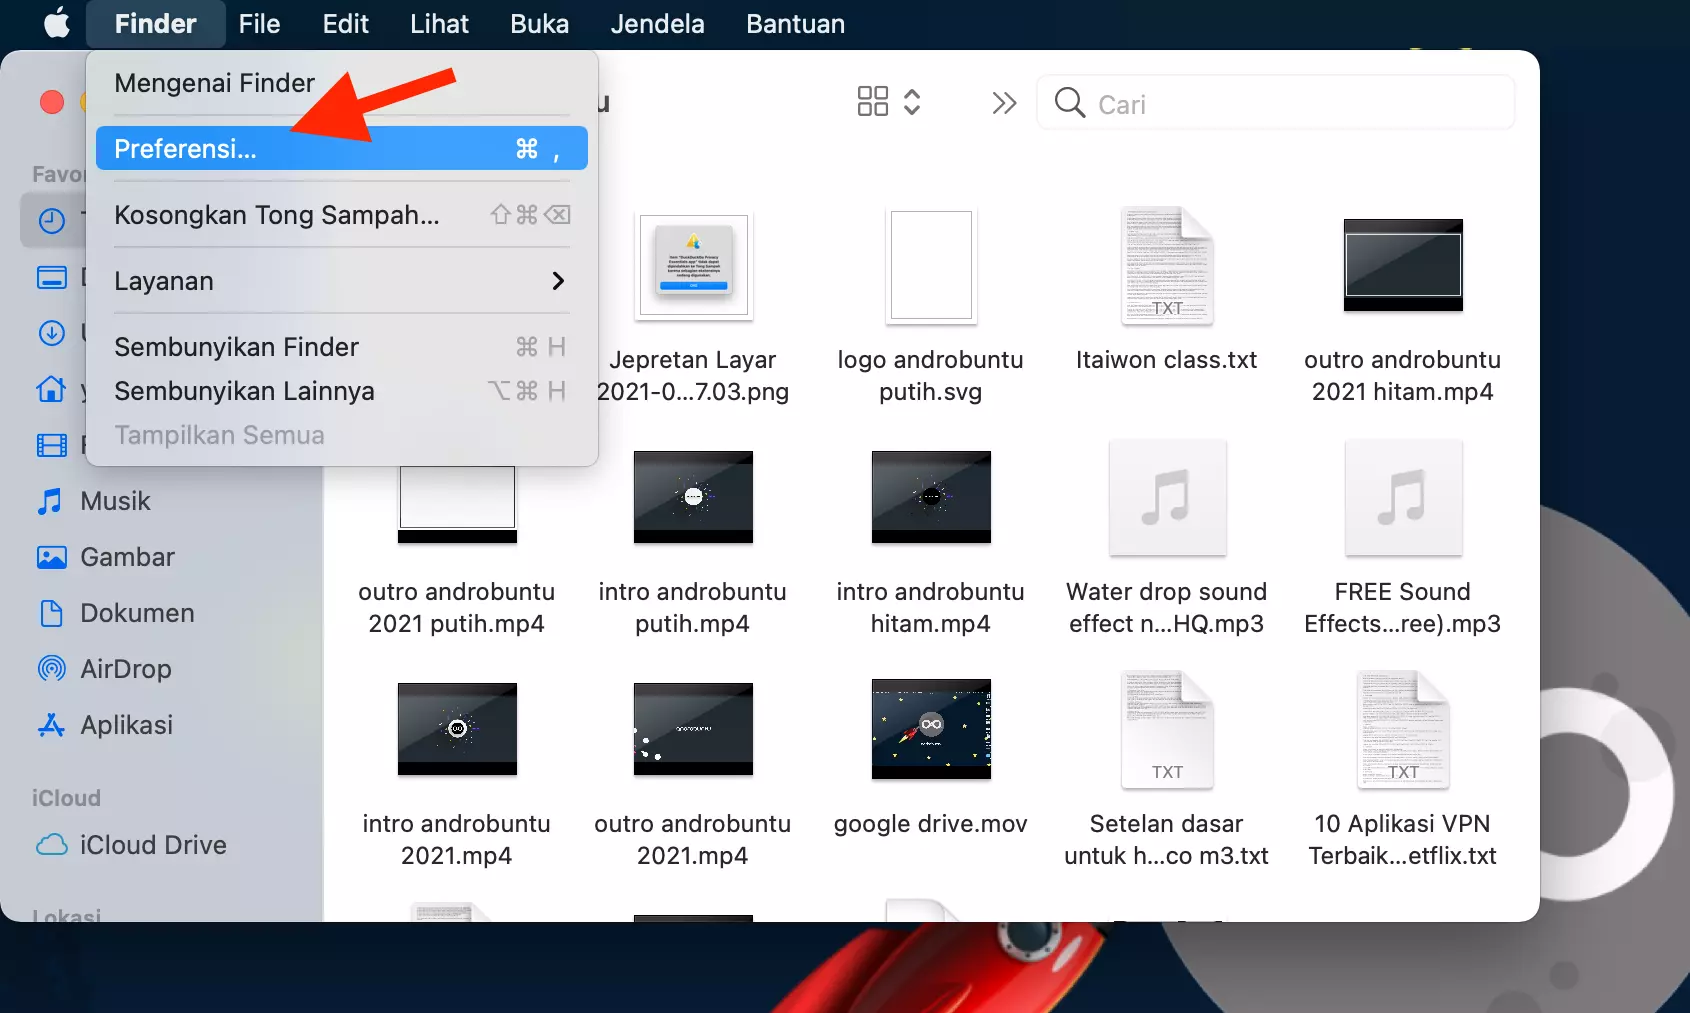 Cara Menyembunyikan Folder Terbaru Pada Finder Mac by Androbuntu 2